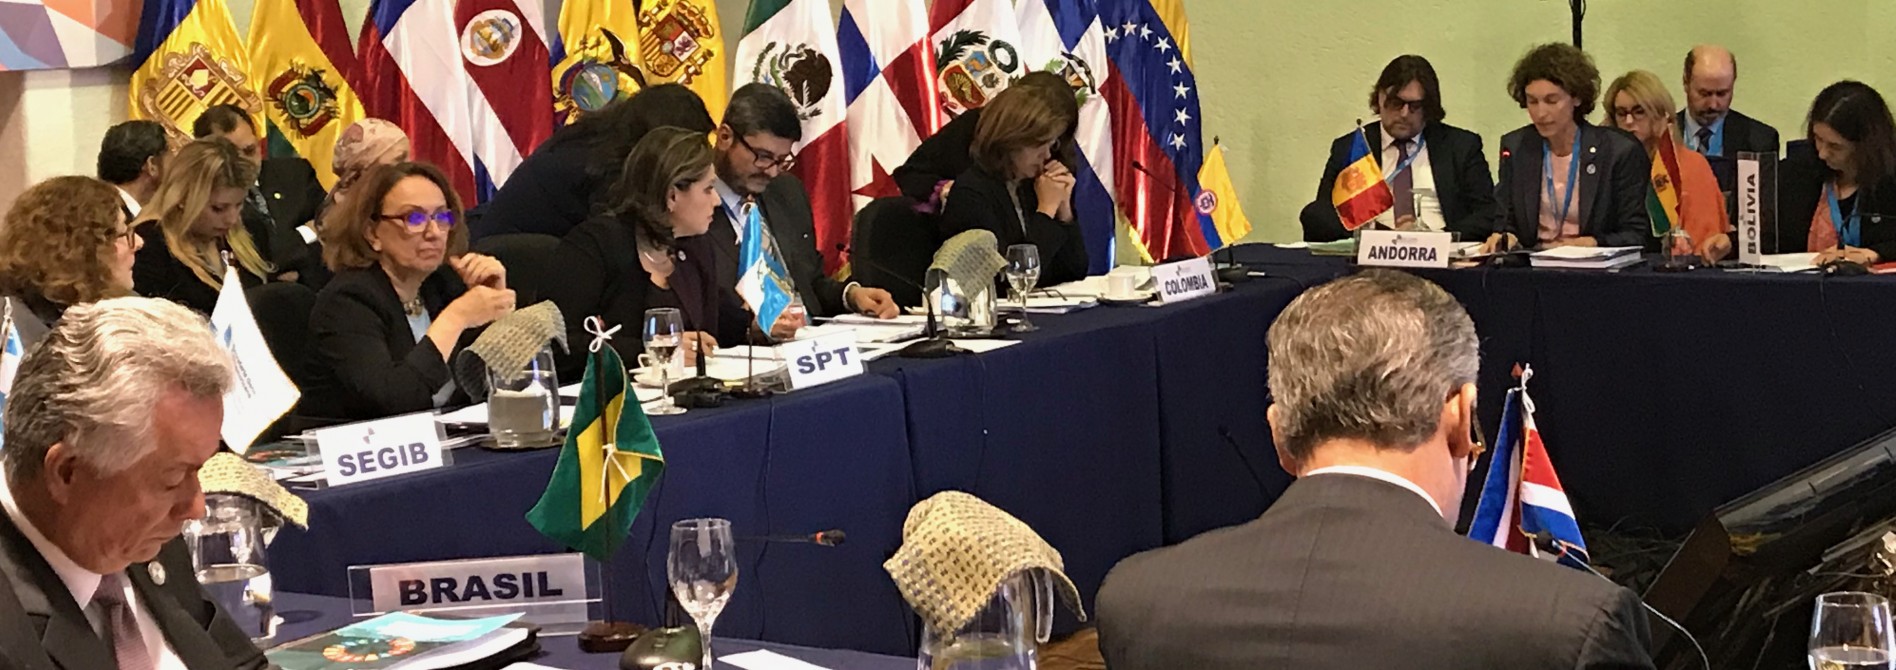 Apoyo unánime de los ministros de Asuntos Exteriores iberoamericanos a la candidatura de Andorra para acoger la Cumbre de 2020